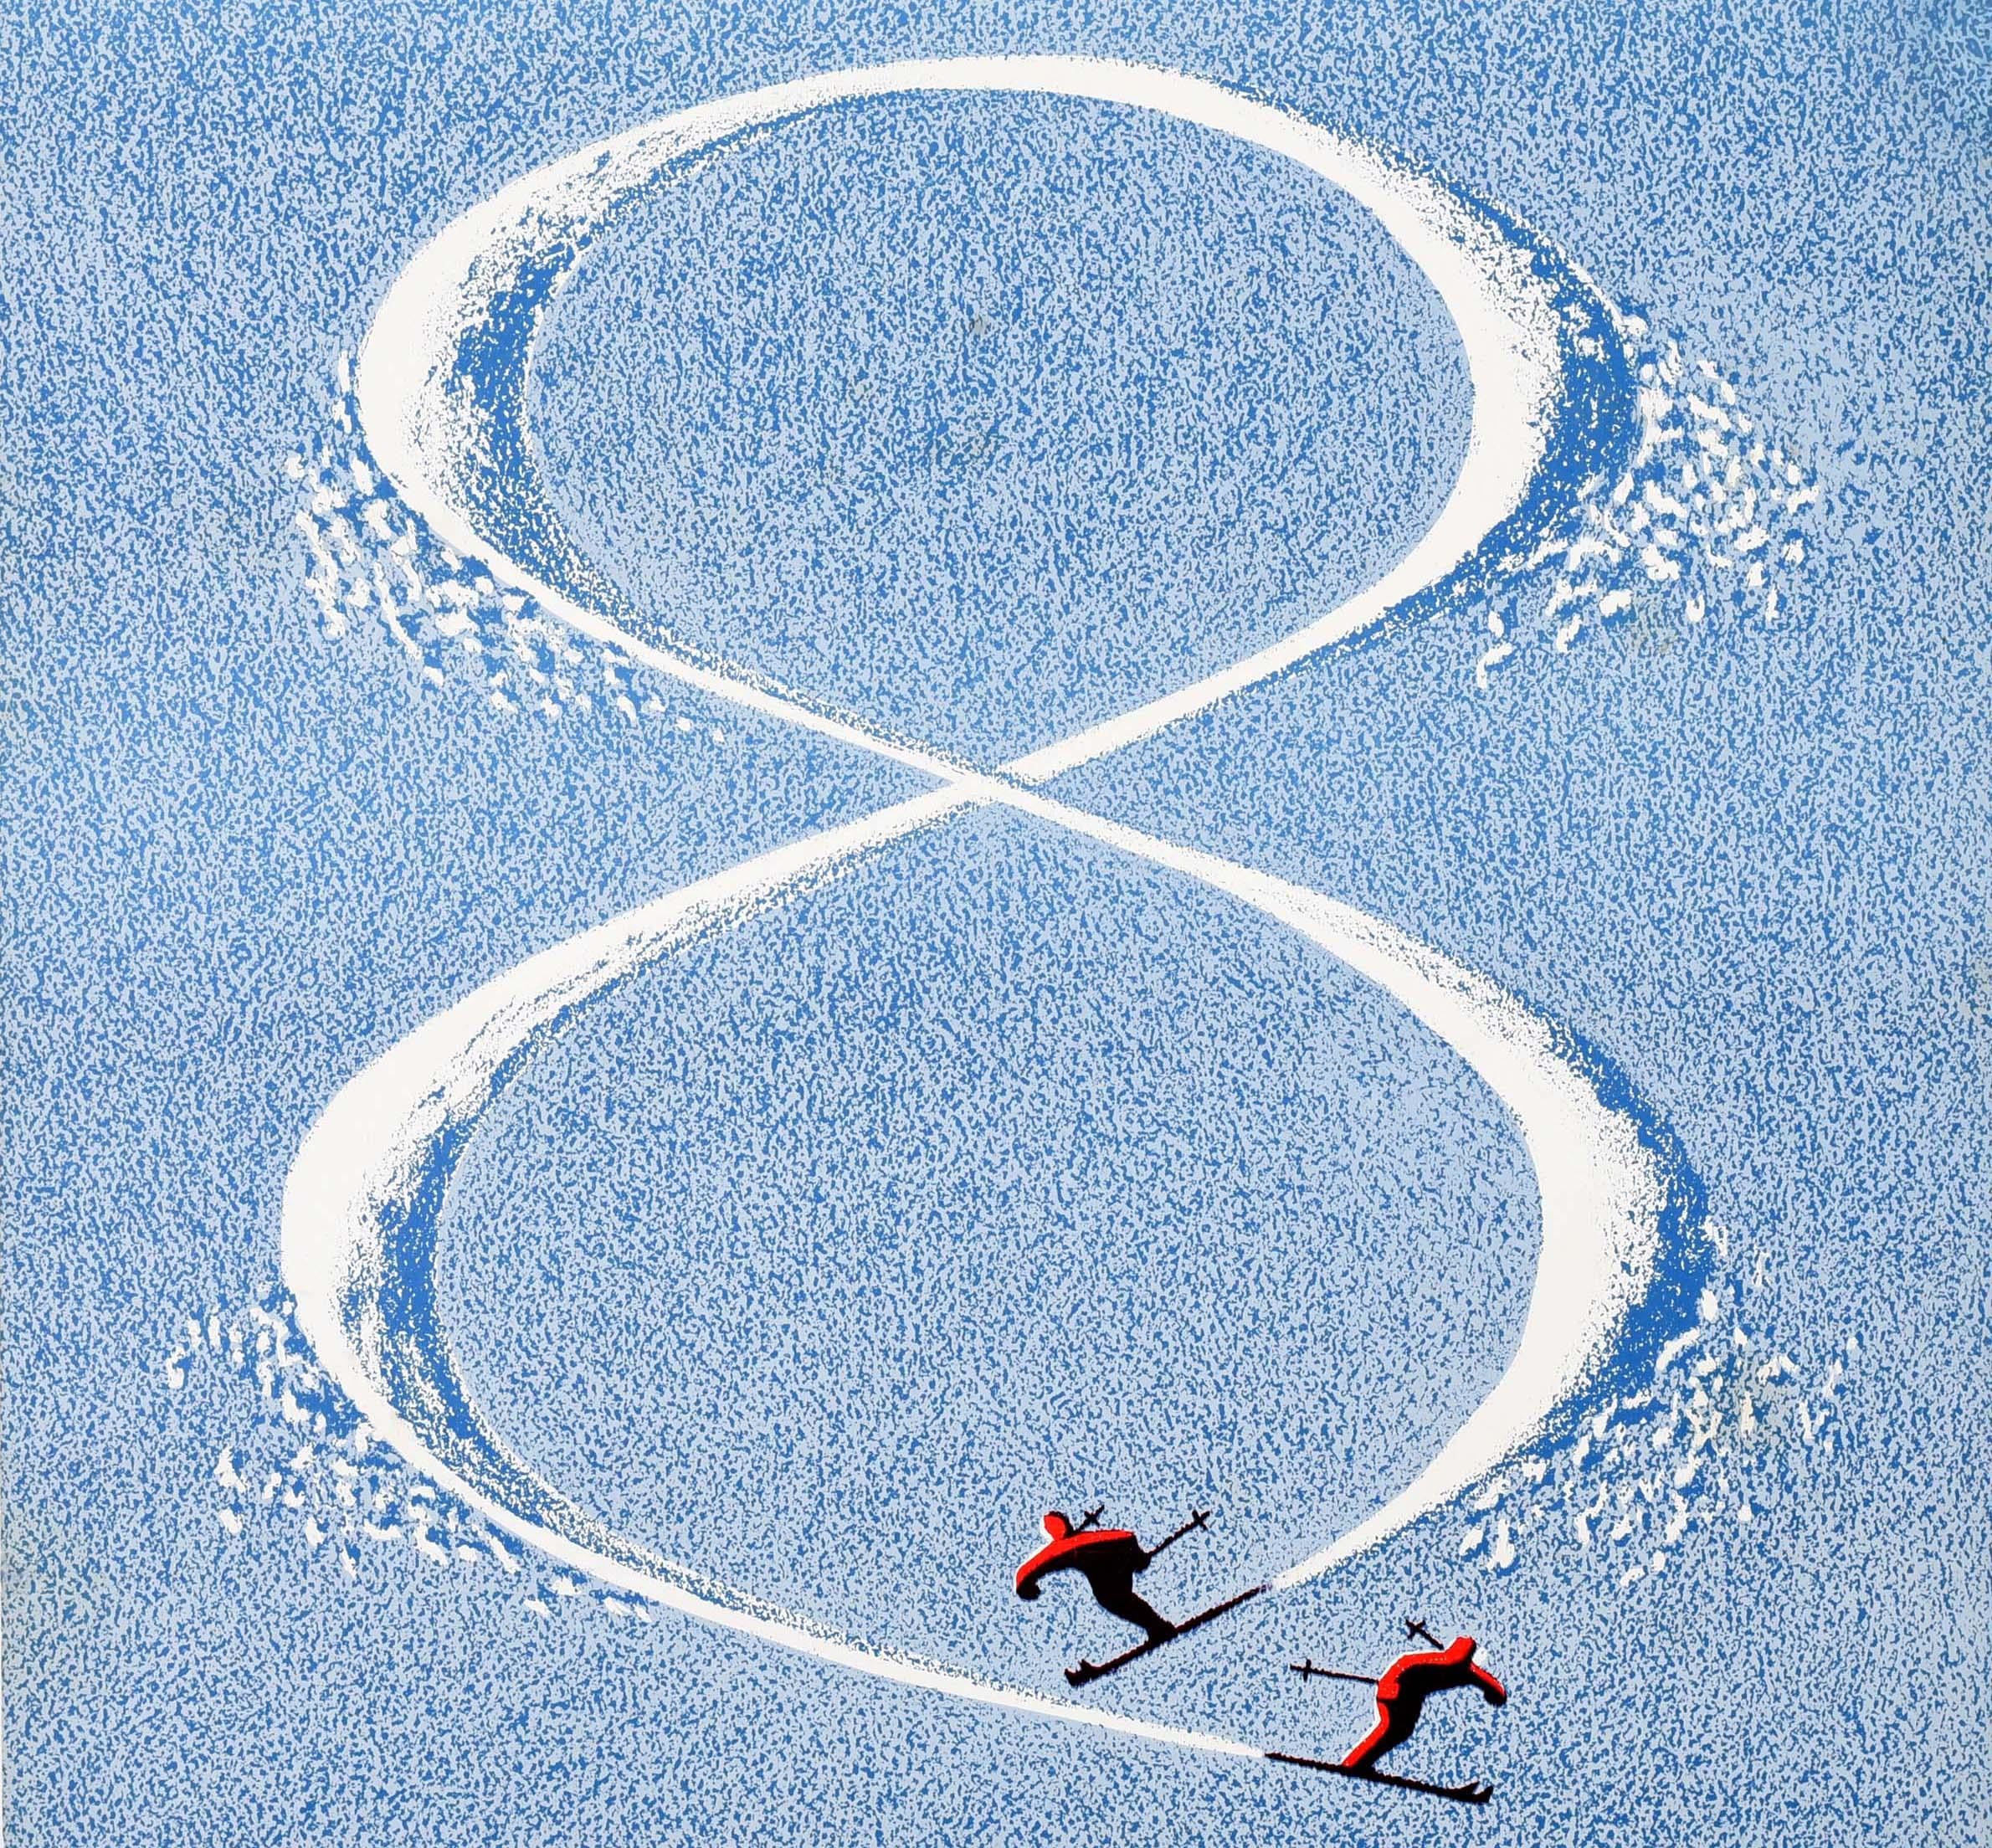 Original-Wintersportplakat für die 8. Interski Aspen Colorado USA 1968 19-28 April. Großartiges Design, das zwei Skifahrer in Rot zeigt, die übereinander einen Hang hinunterfahren und die Zahl 8 im Schnee bilden, mit dem Text darunter. Der beliebte